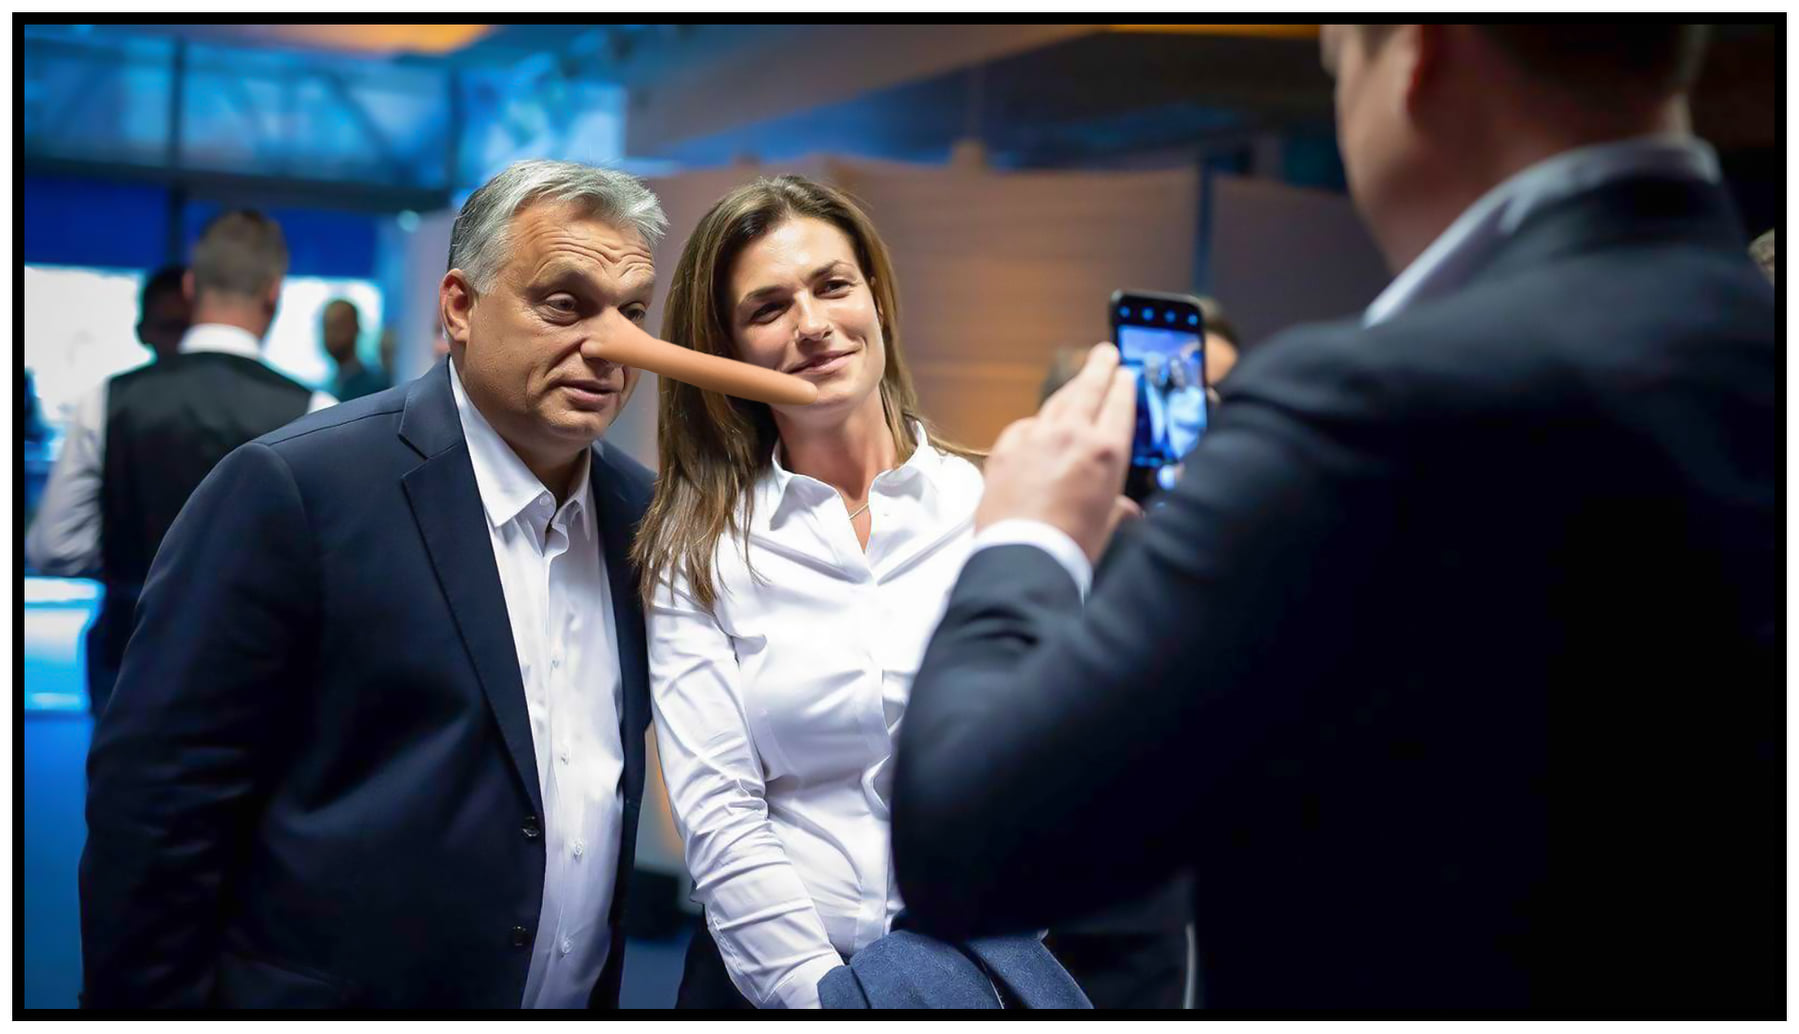 Dudaron osztotta az eszét Orbán, az elsőszámú közszolga - Erősen kilengett a linkségmérő!